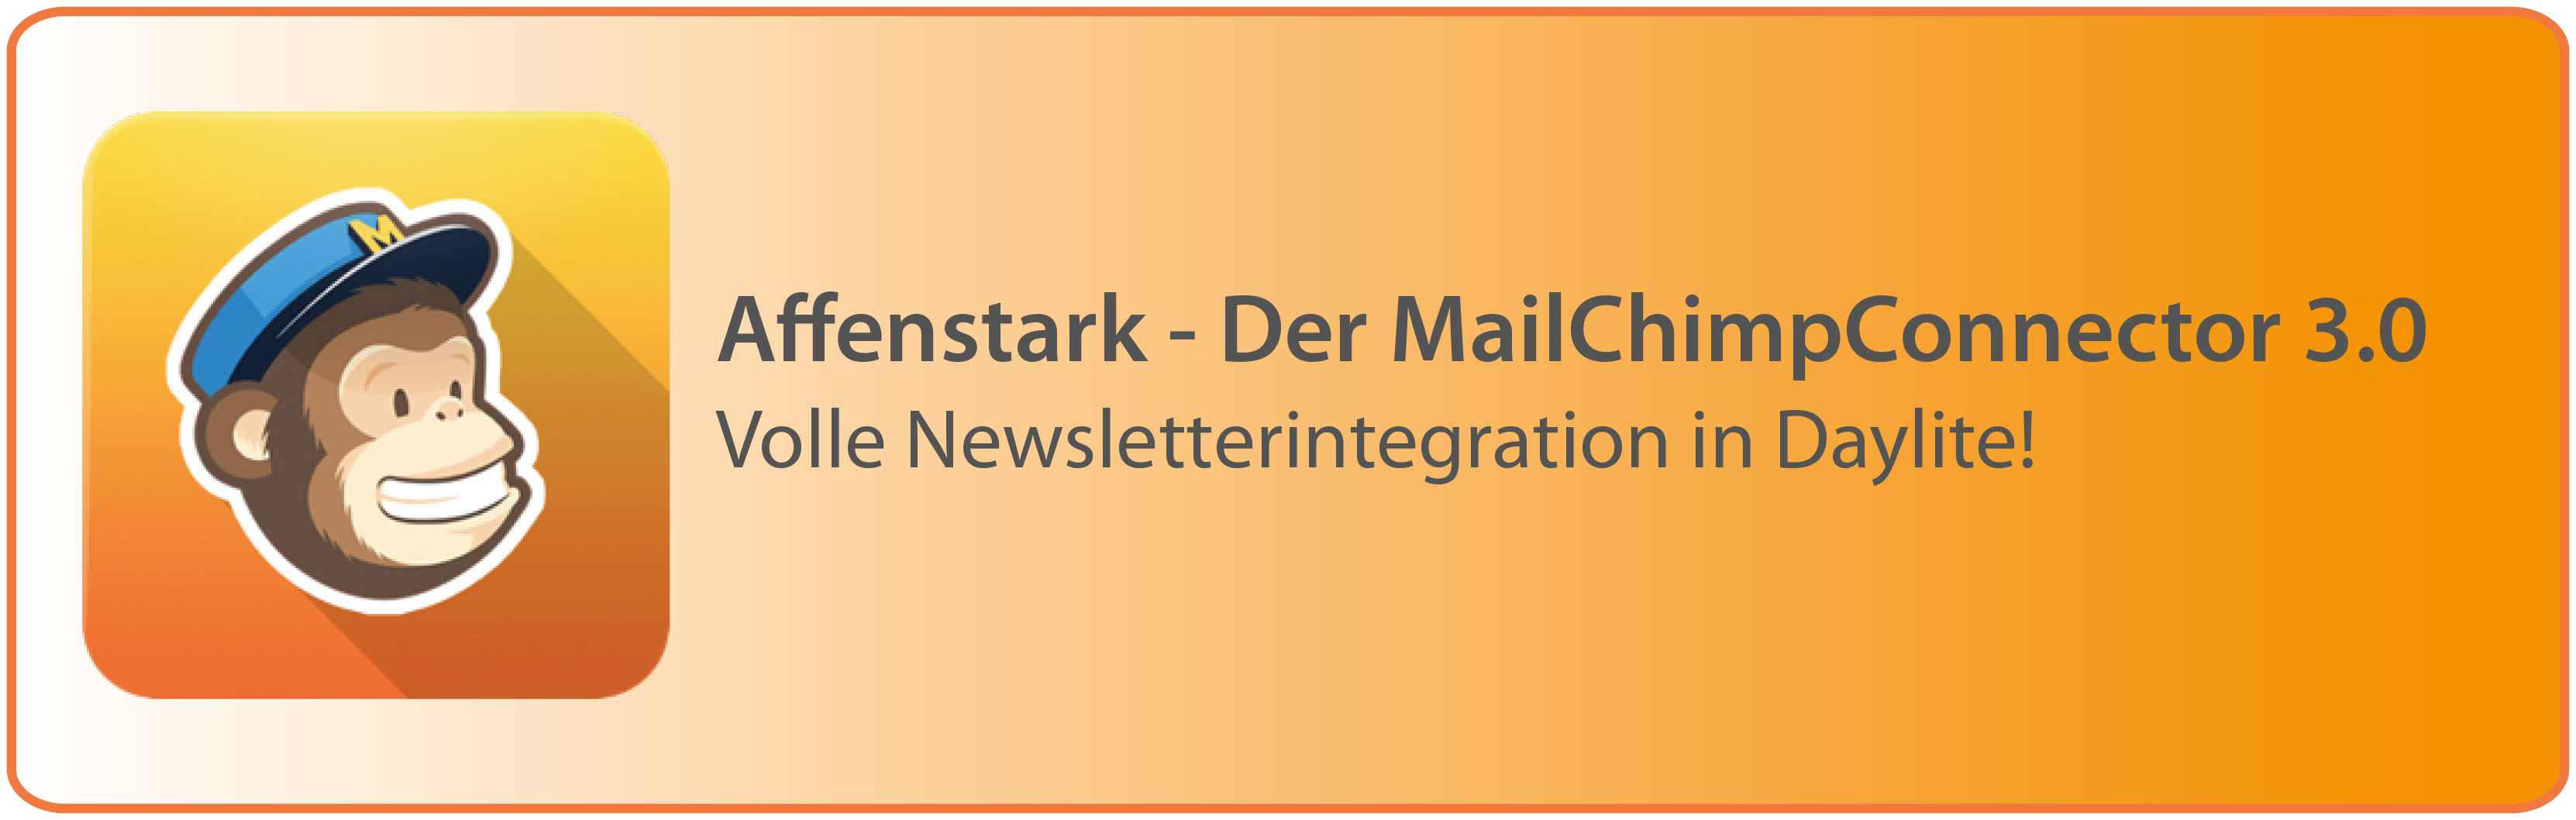 MailChimpConnector 3.0 - Neu!